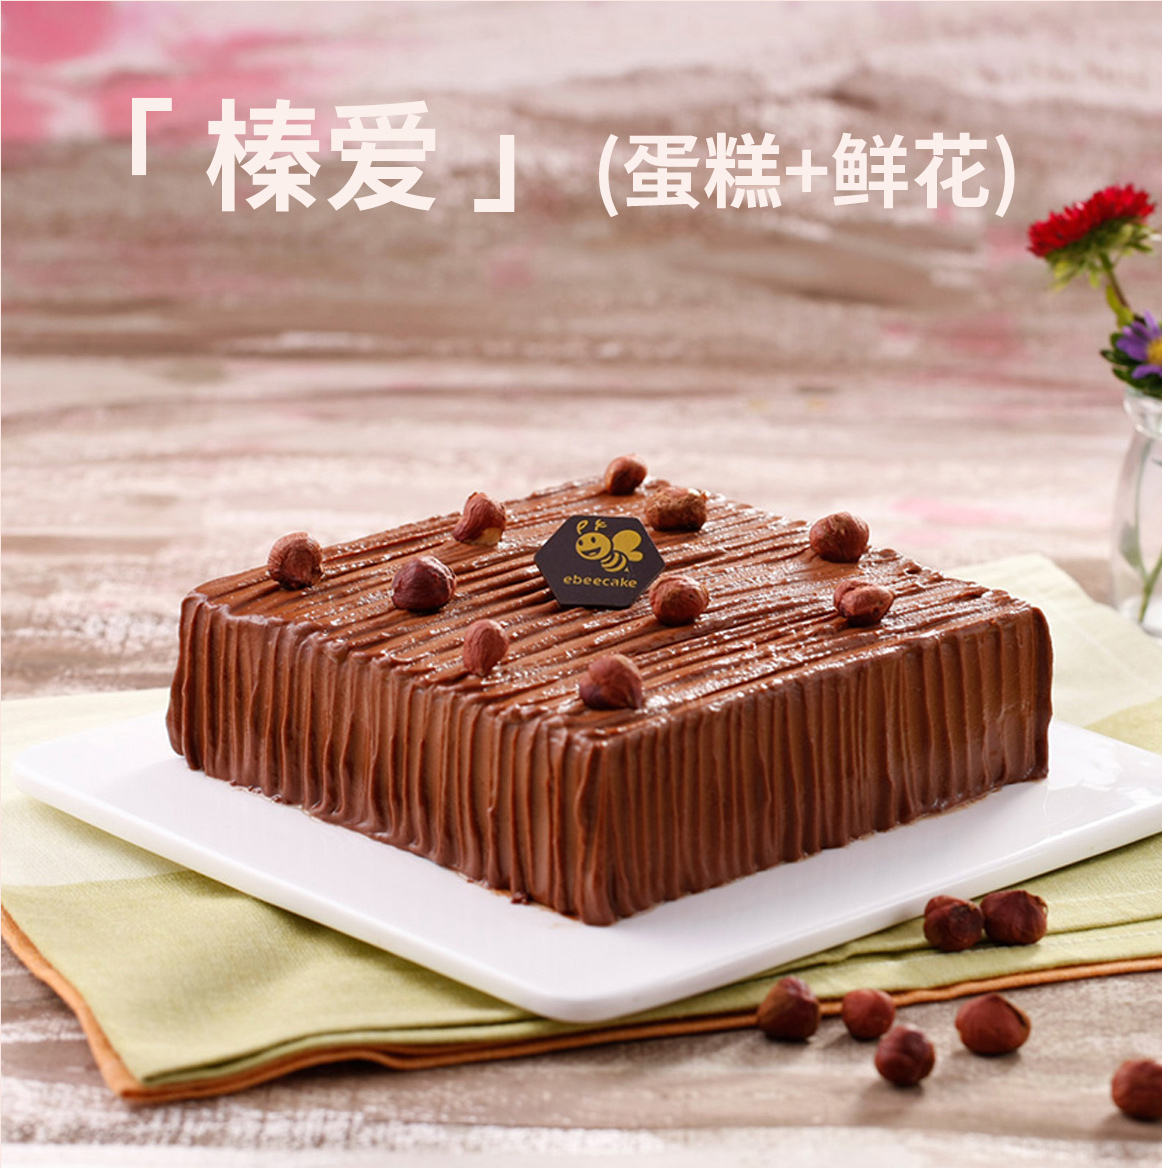 榛爱|黑巧克力榛子蛋糕